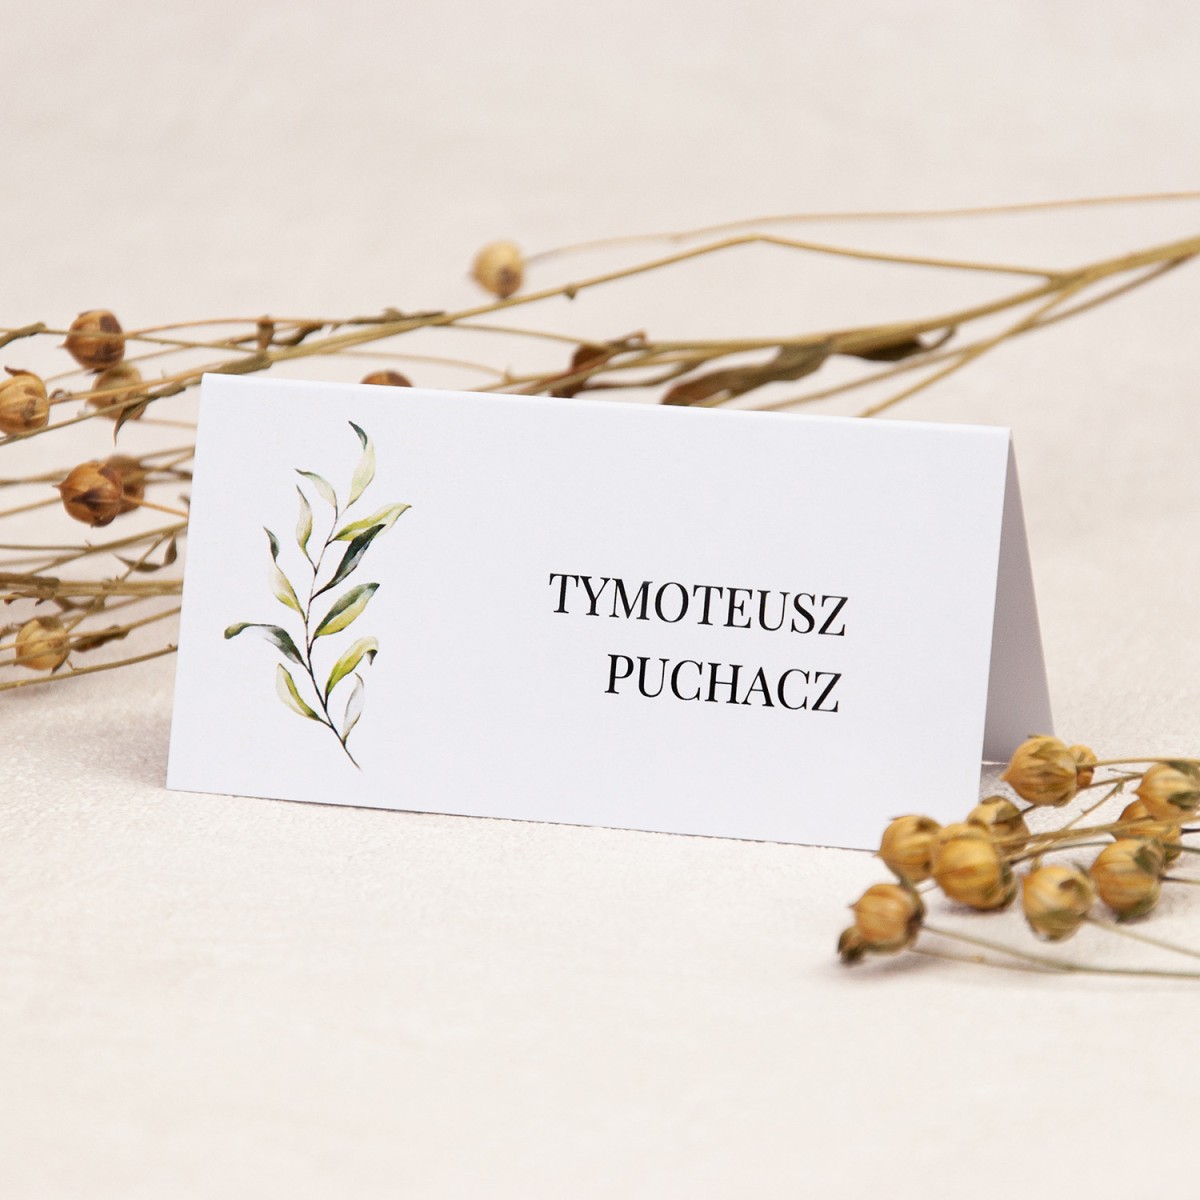 Rustykalne winietki na stoły weselne z motywem gałązki oliwnej - Olive Brunch - PRÓBKA